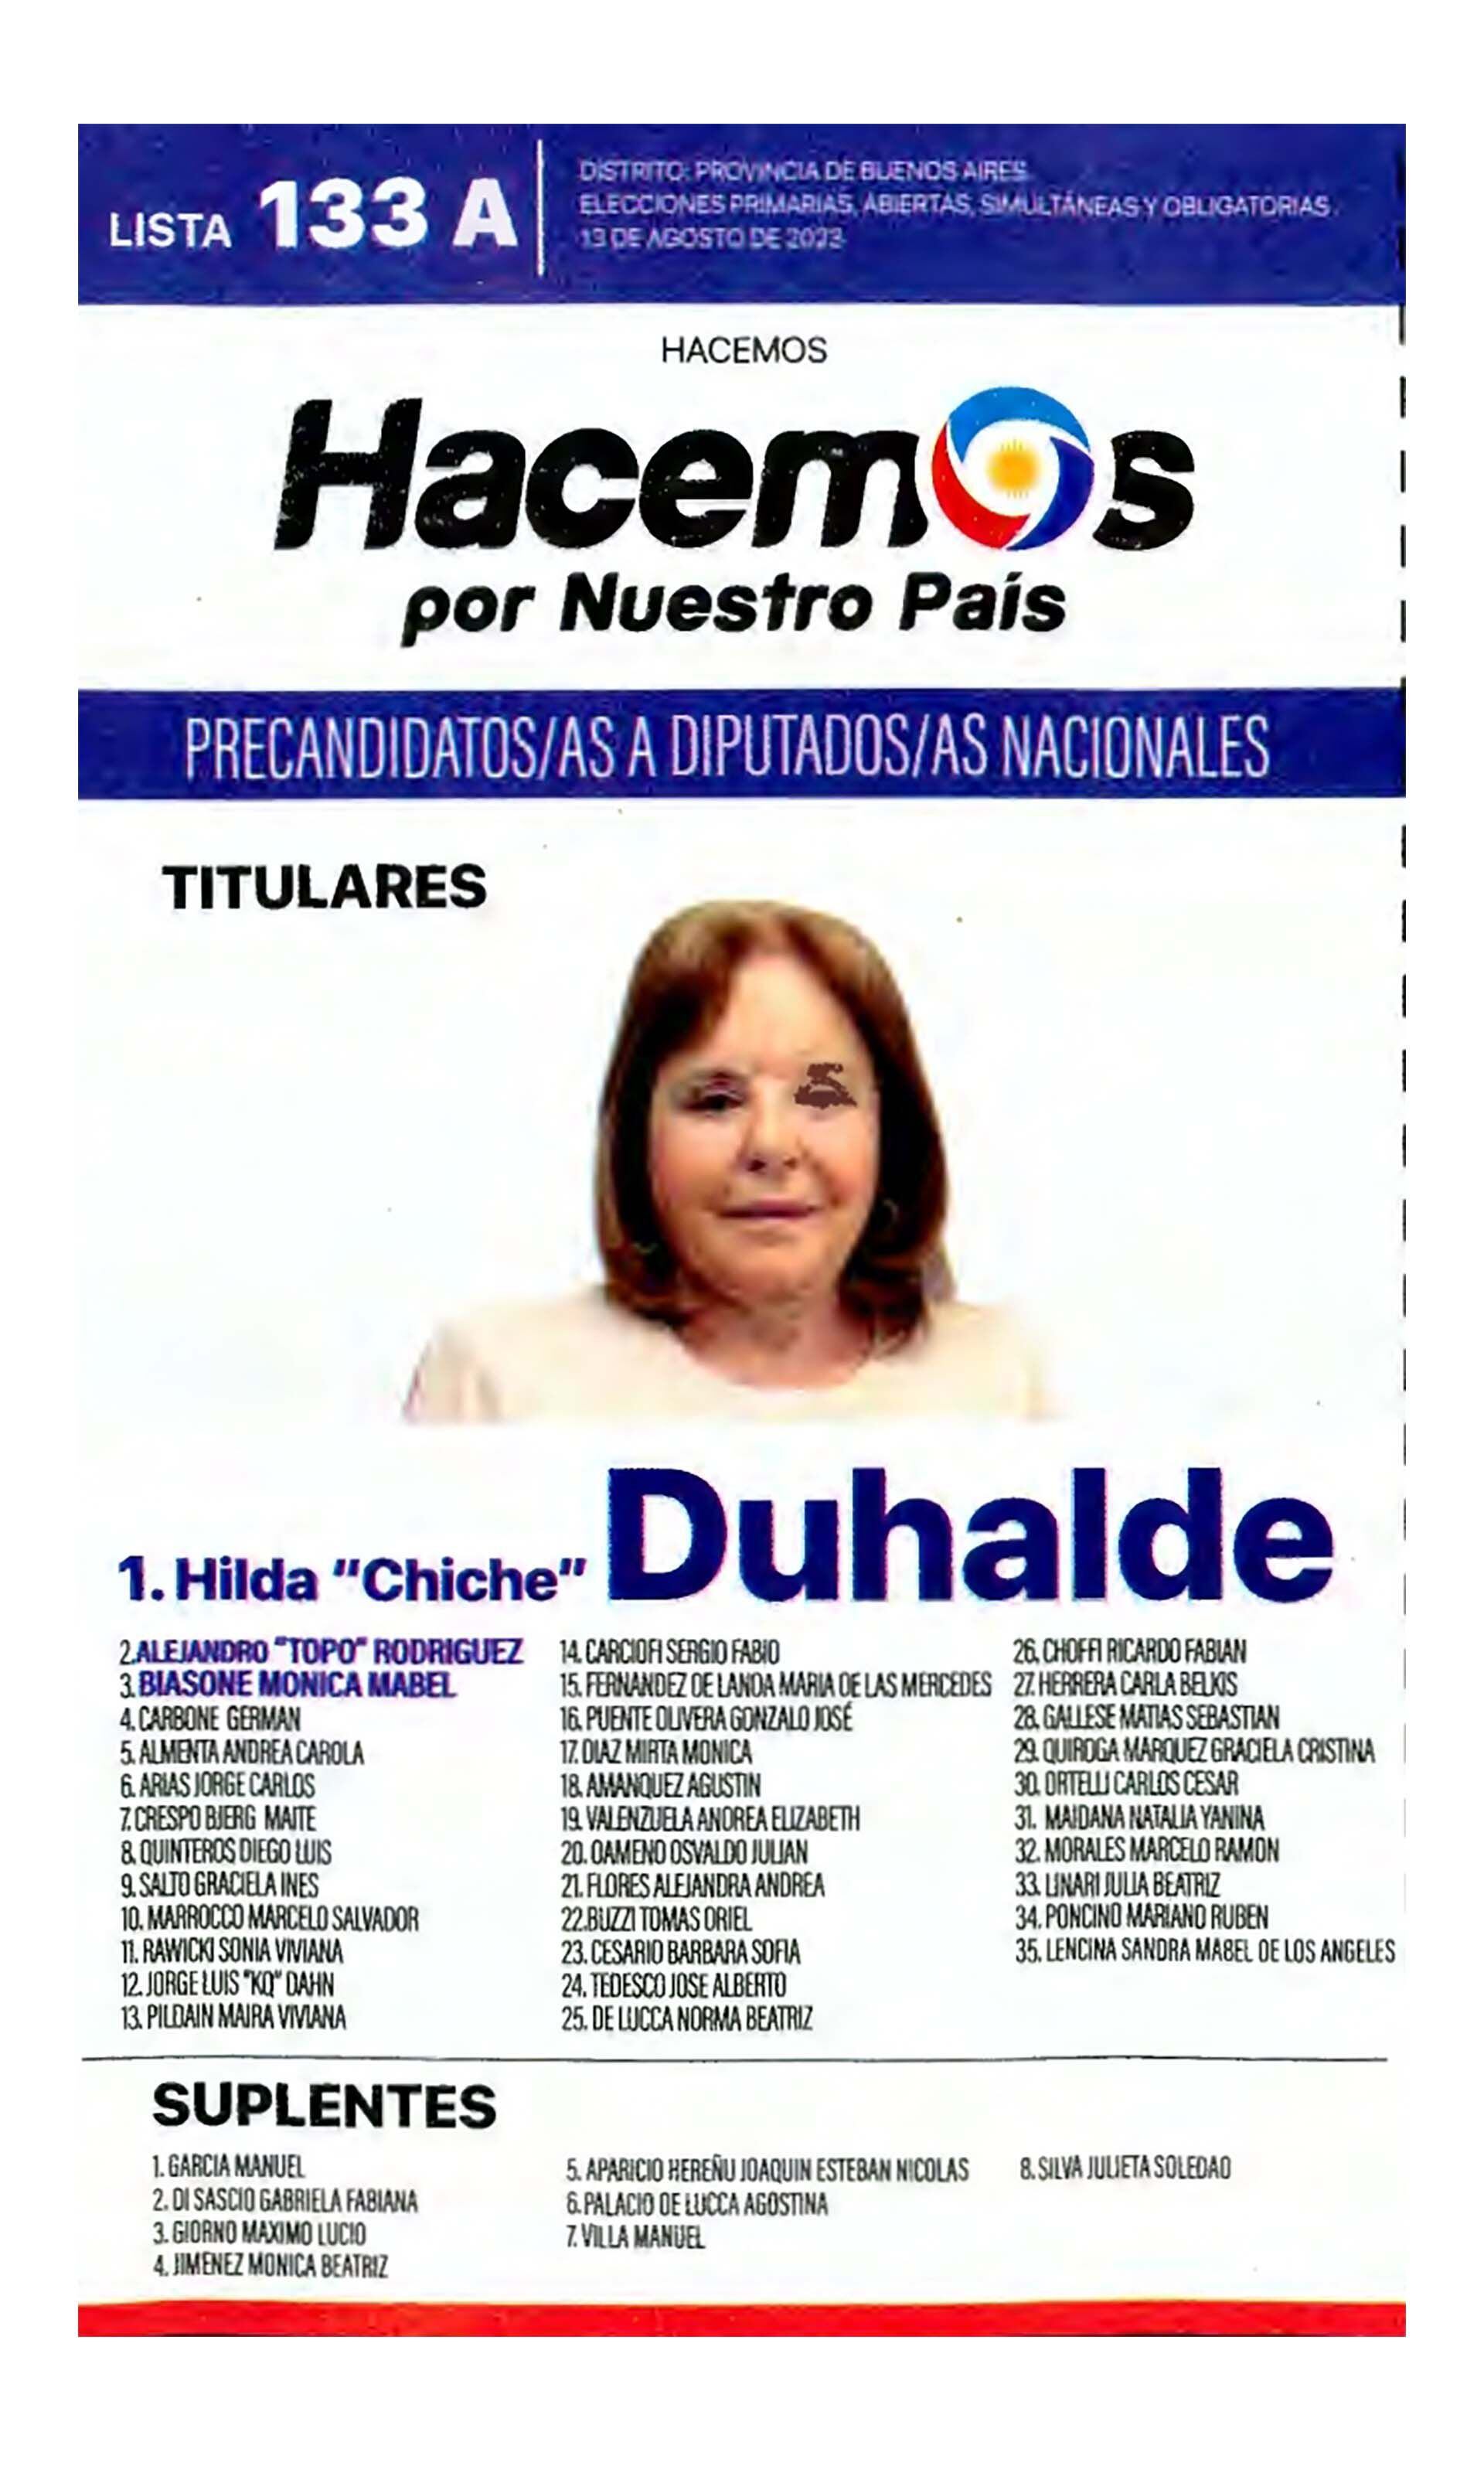 La boleta oficial de Hacemos por Nuestro País de precandidatos a diputados nacionales de Buenos Aires